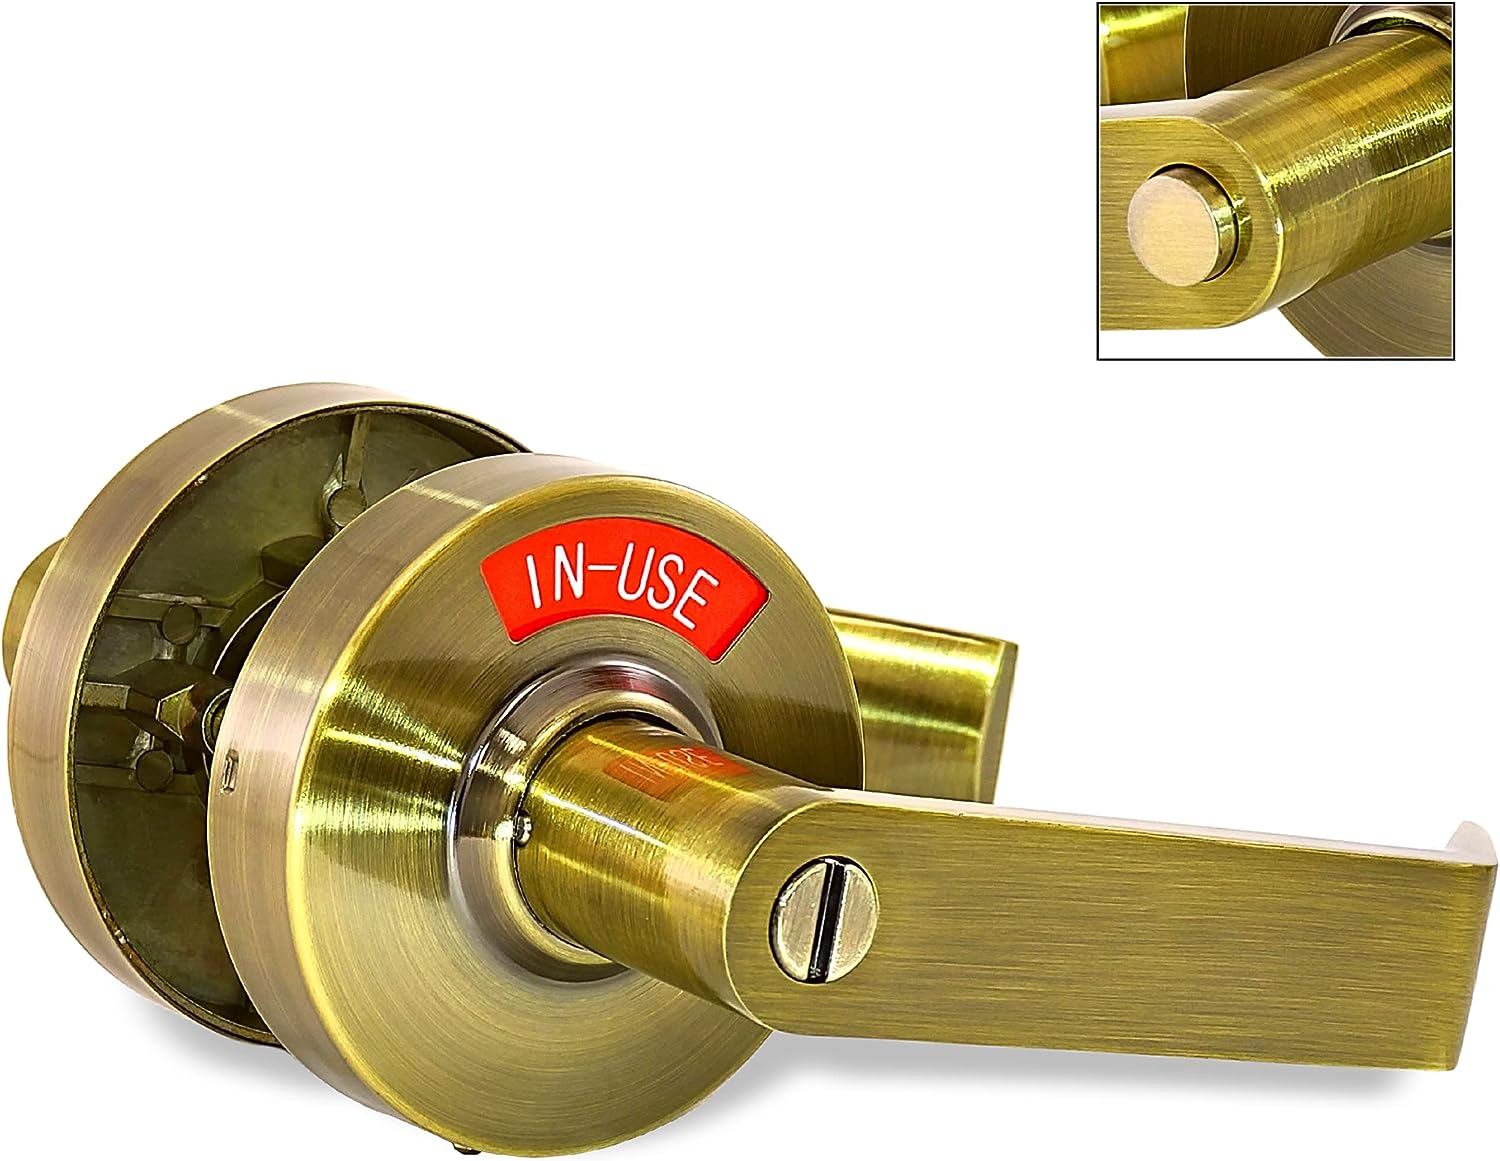 occupied door handle Door Handle Keyless Door Lock Toilet Lock Vacant  Occupied ✪